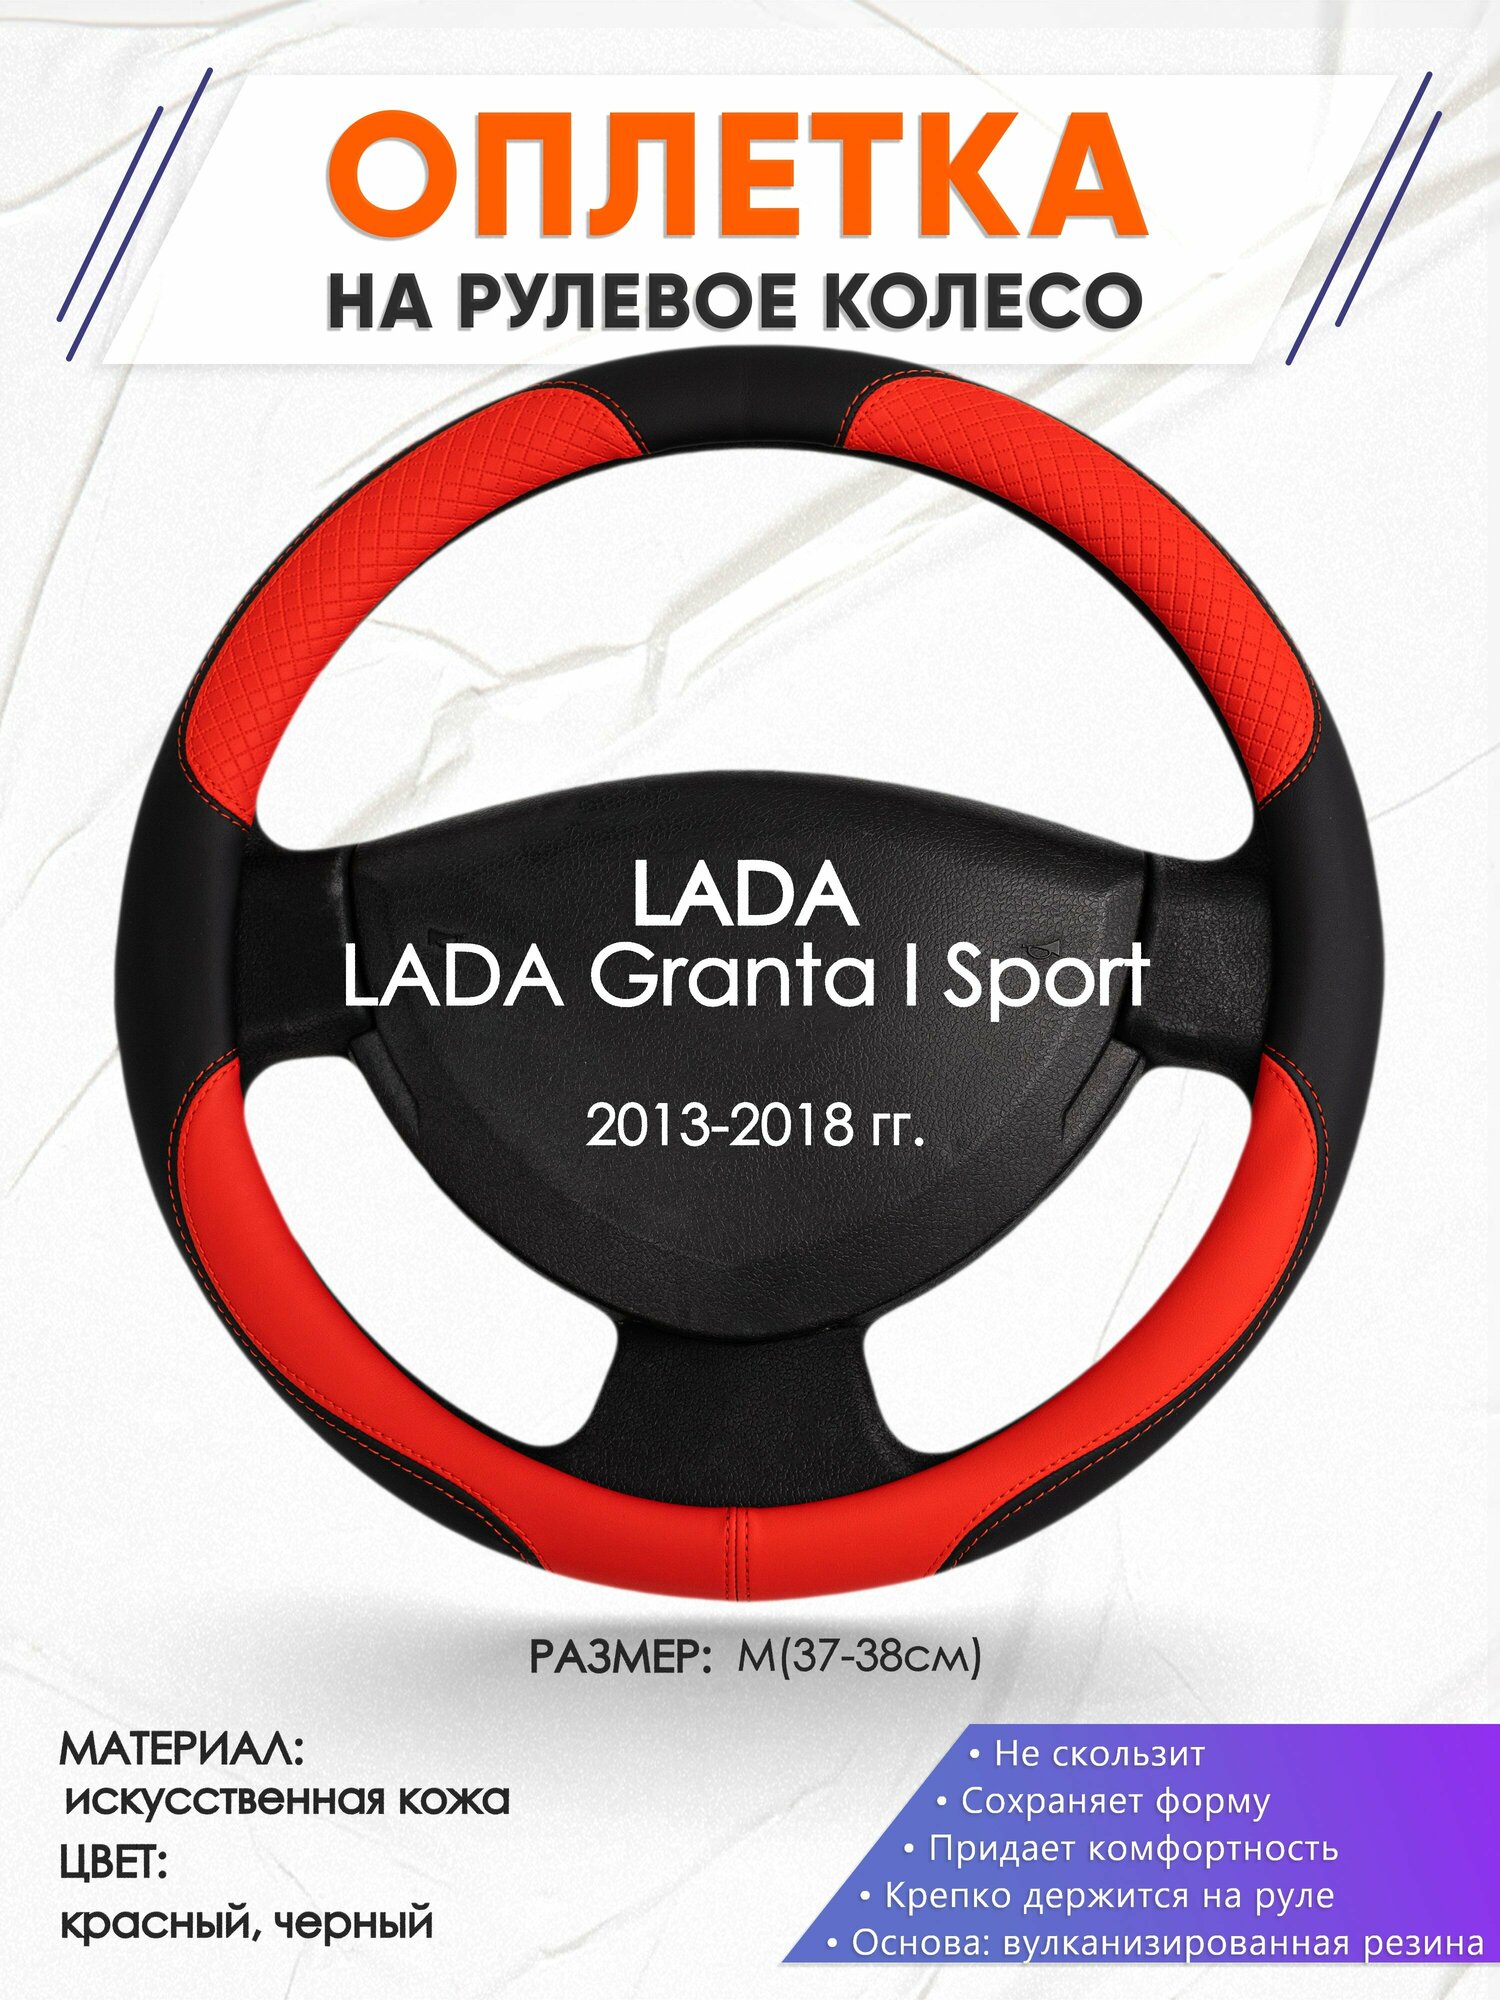 Оплетка наруль для LADA Granta I Sport(Лада Гранта спорт) 2013-2018 годов выпуска, размер M(37-38см), Искусственная кожа 05